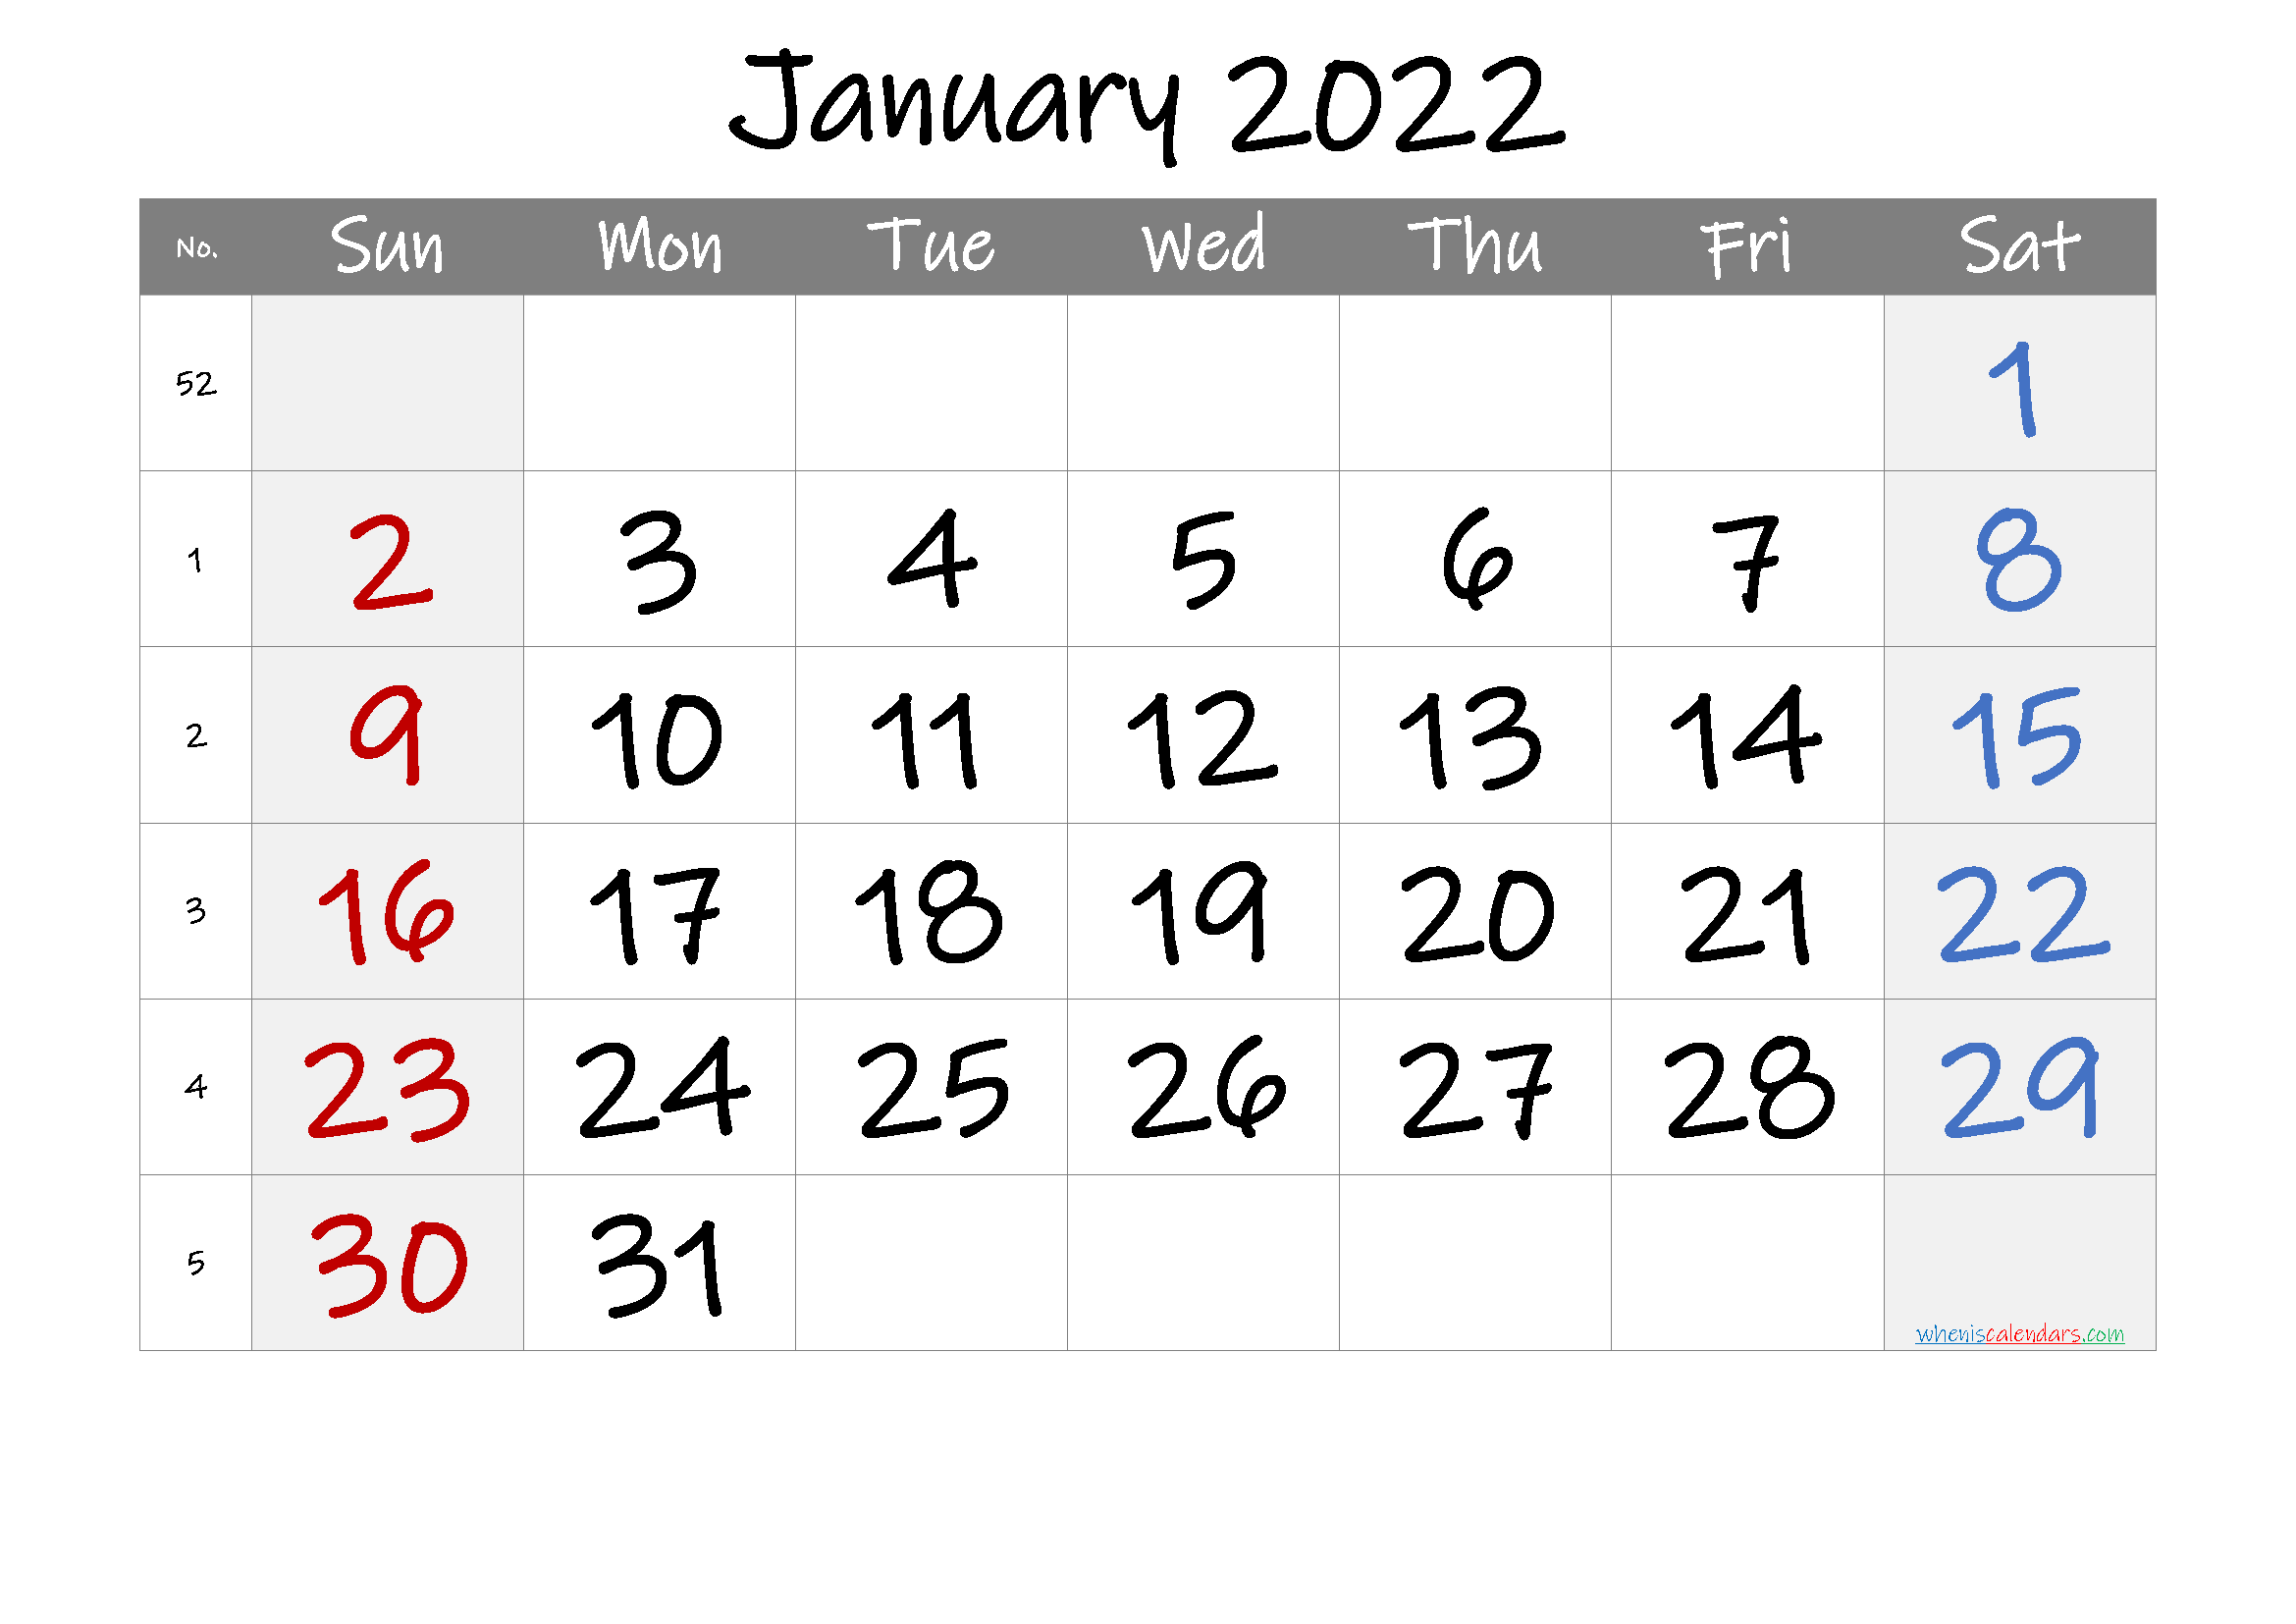 January 2022 Printable Calendar with Week Numbers